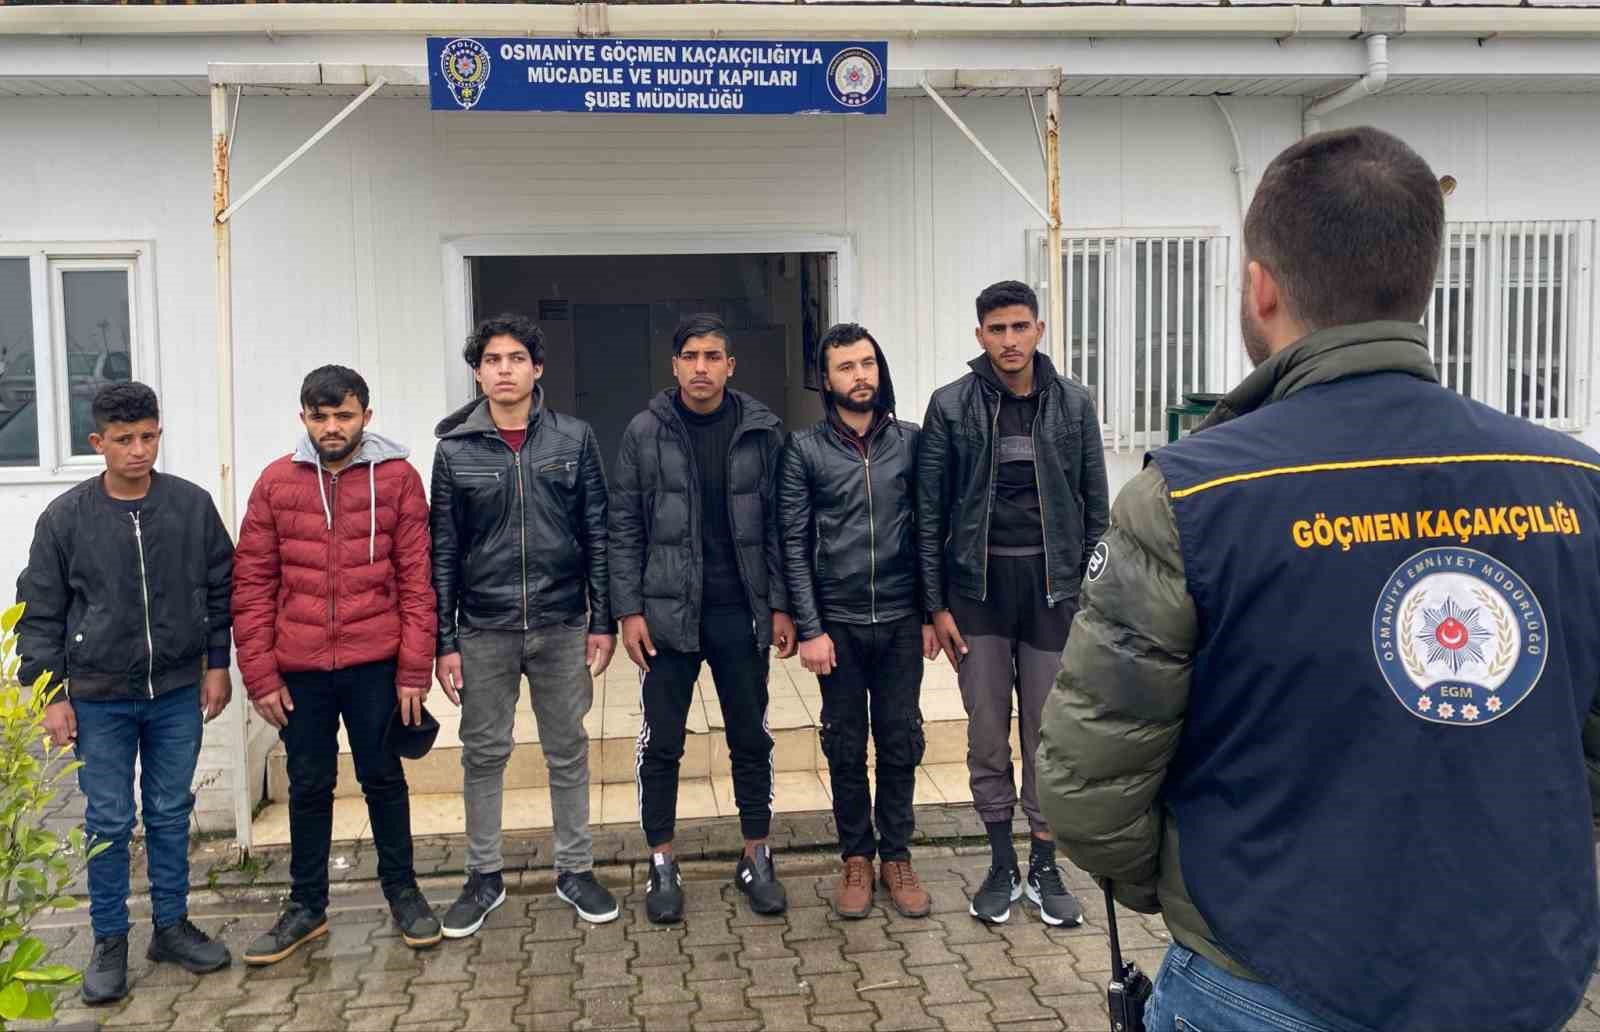 Osmaniye’de 6 kaçak göçmen yakalandı: İşte detaylar!